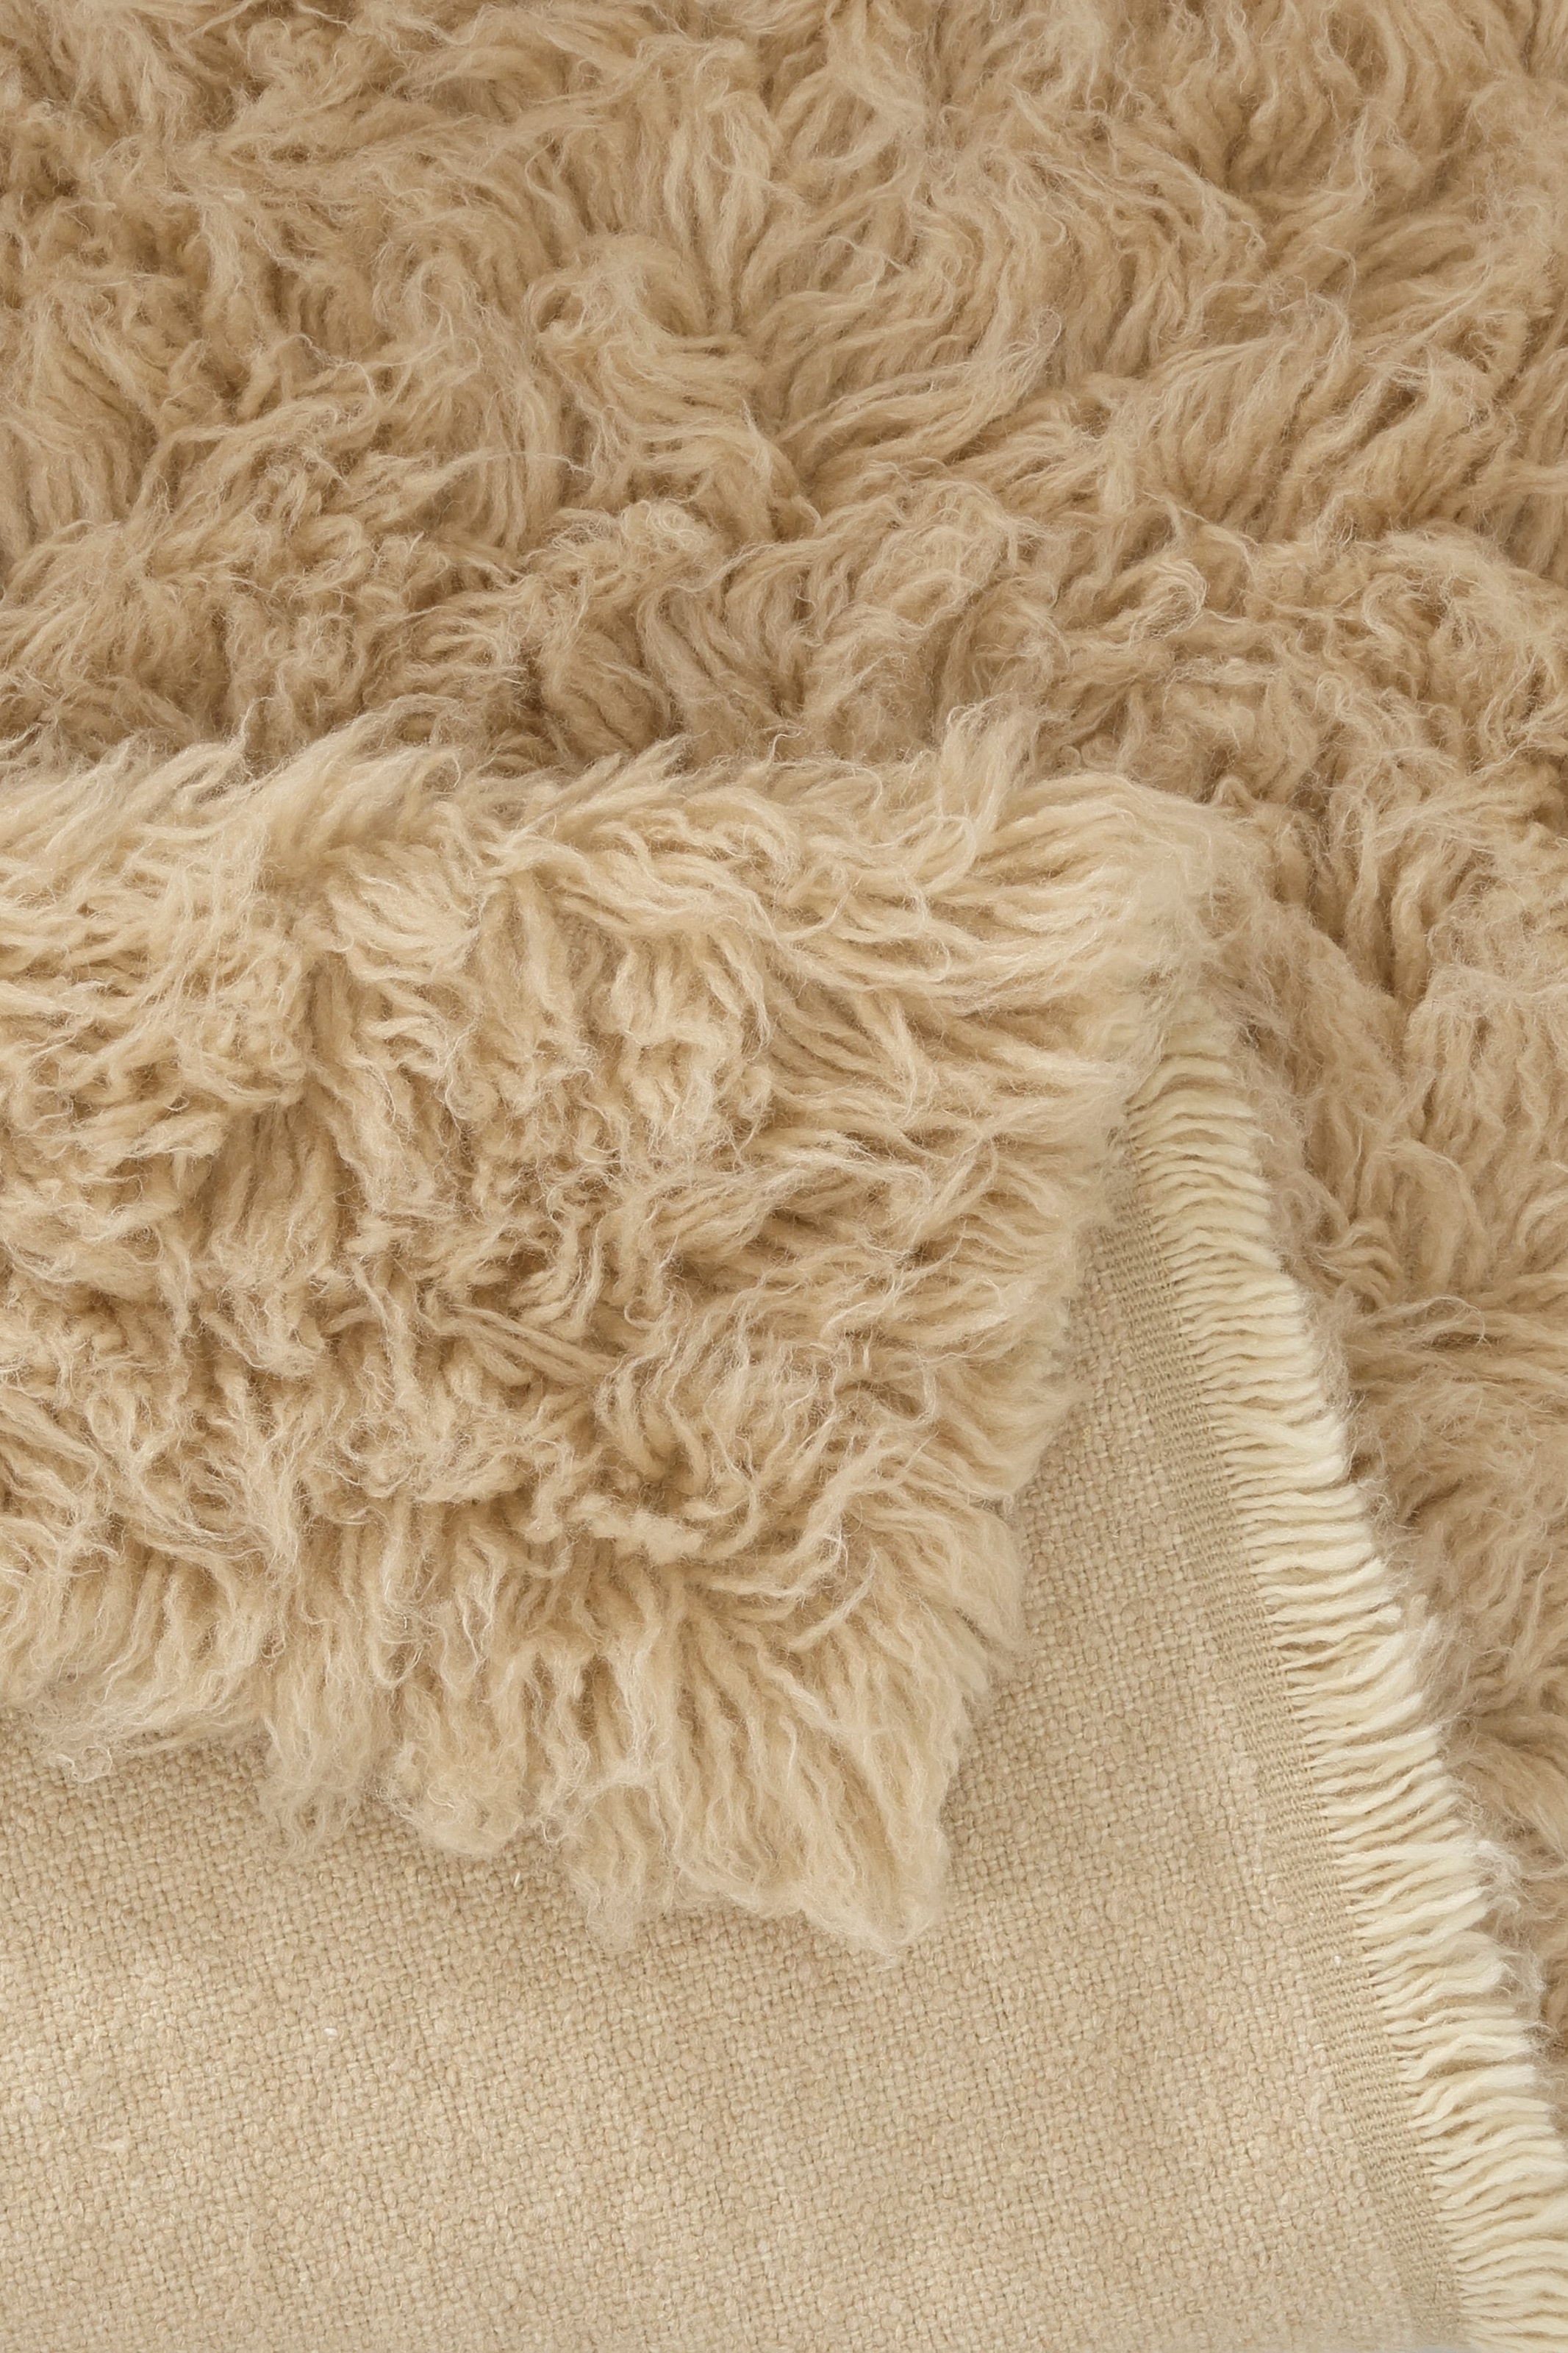 Böing Carpet Wollteppich »Flokati 1500 g«, rechteckig, Handweb Teppich, Uni- Farben, reine Wolle, handgewebt online kaufen